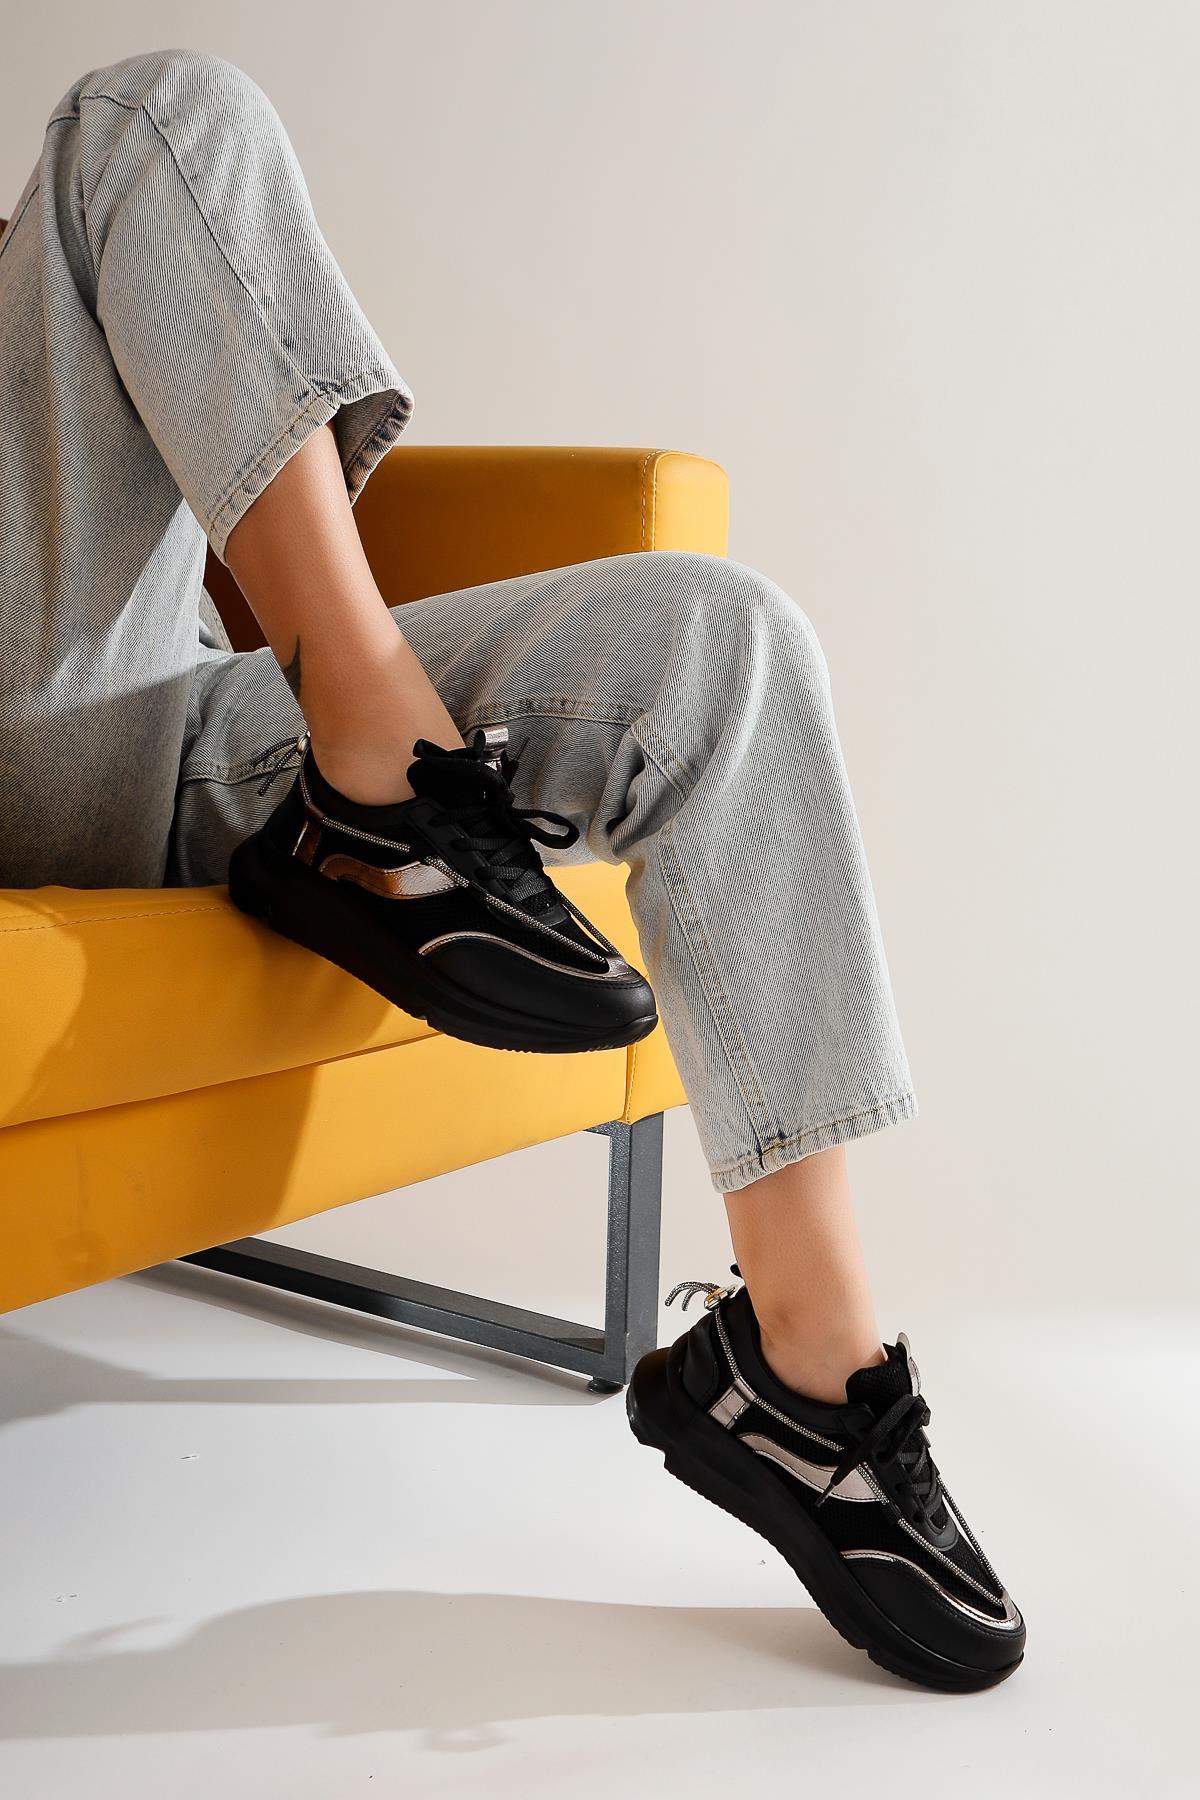 Luann Siyah Taş Detaylı Bağcıklı Kadın Sneakers Spor Kadın Ayakkabı